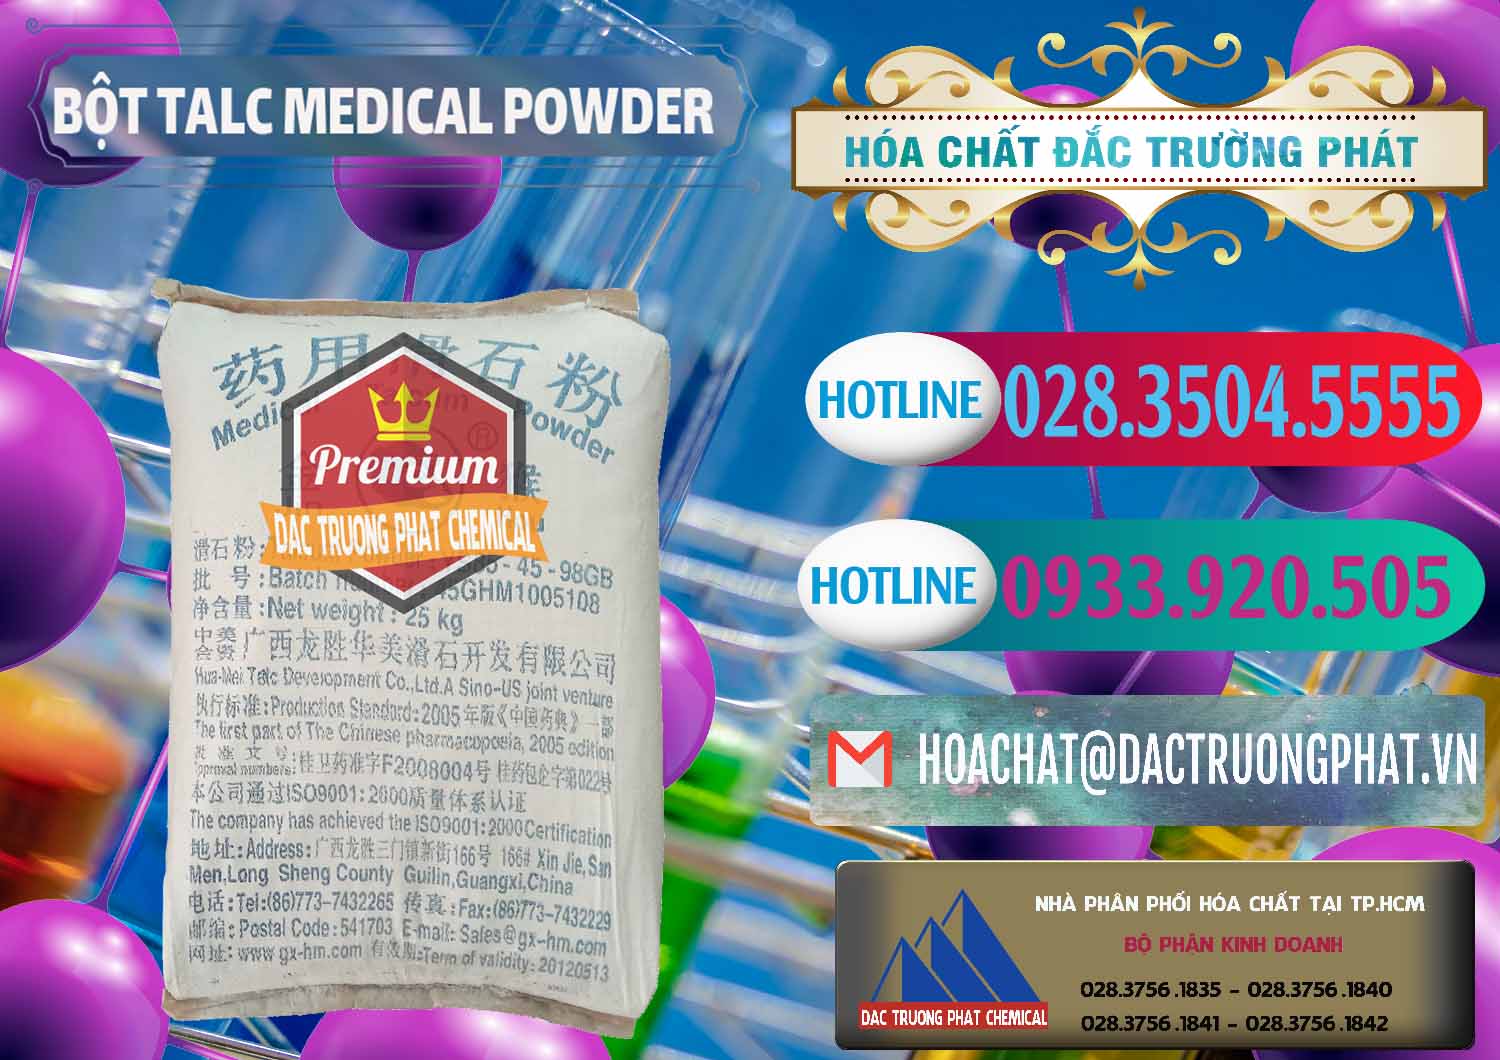 Bán _ cung cấp Bột Talc Medical Powder Trung Quốc China - 0036 - Chuyên cung cấp và nhập khẩu hóa chất tại TP.HCM - truongphat.vn